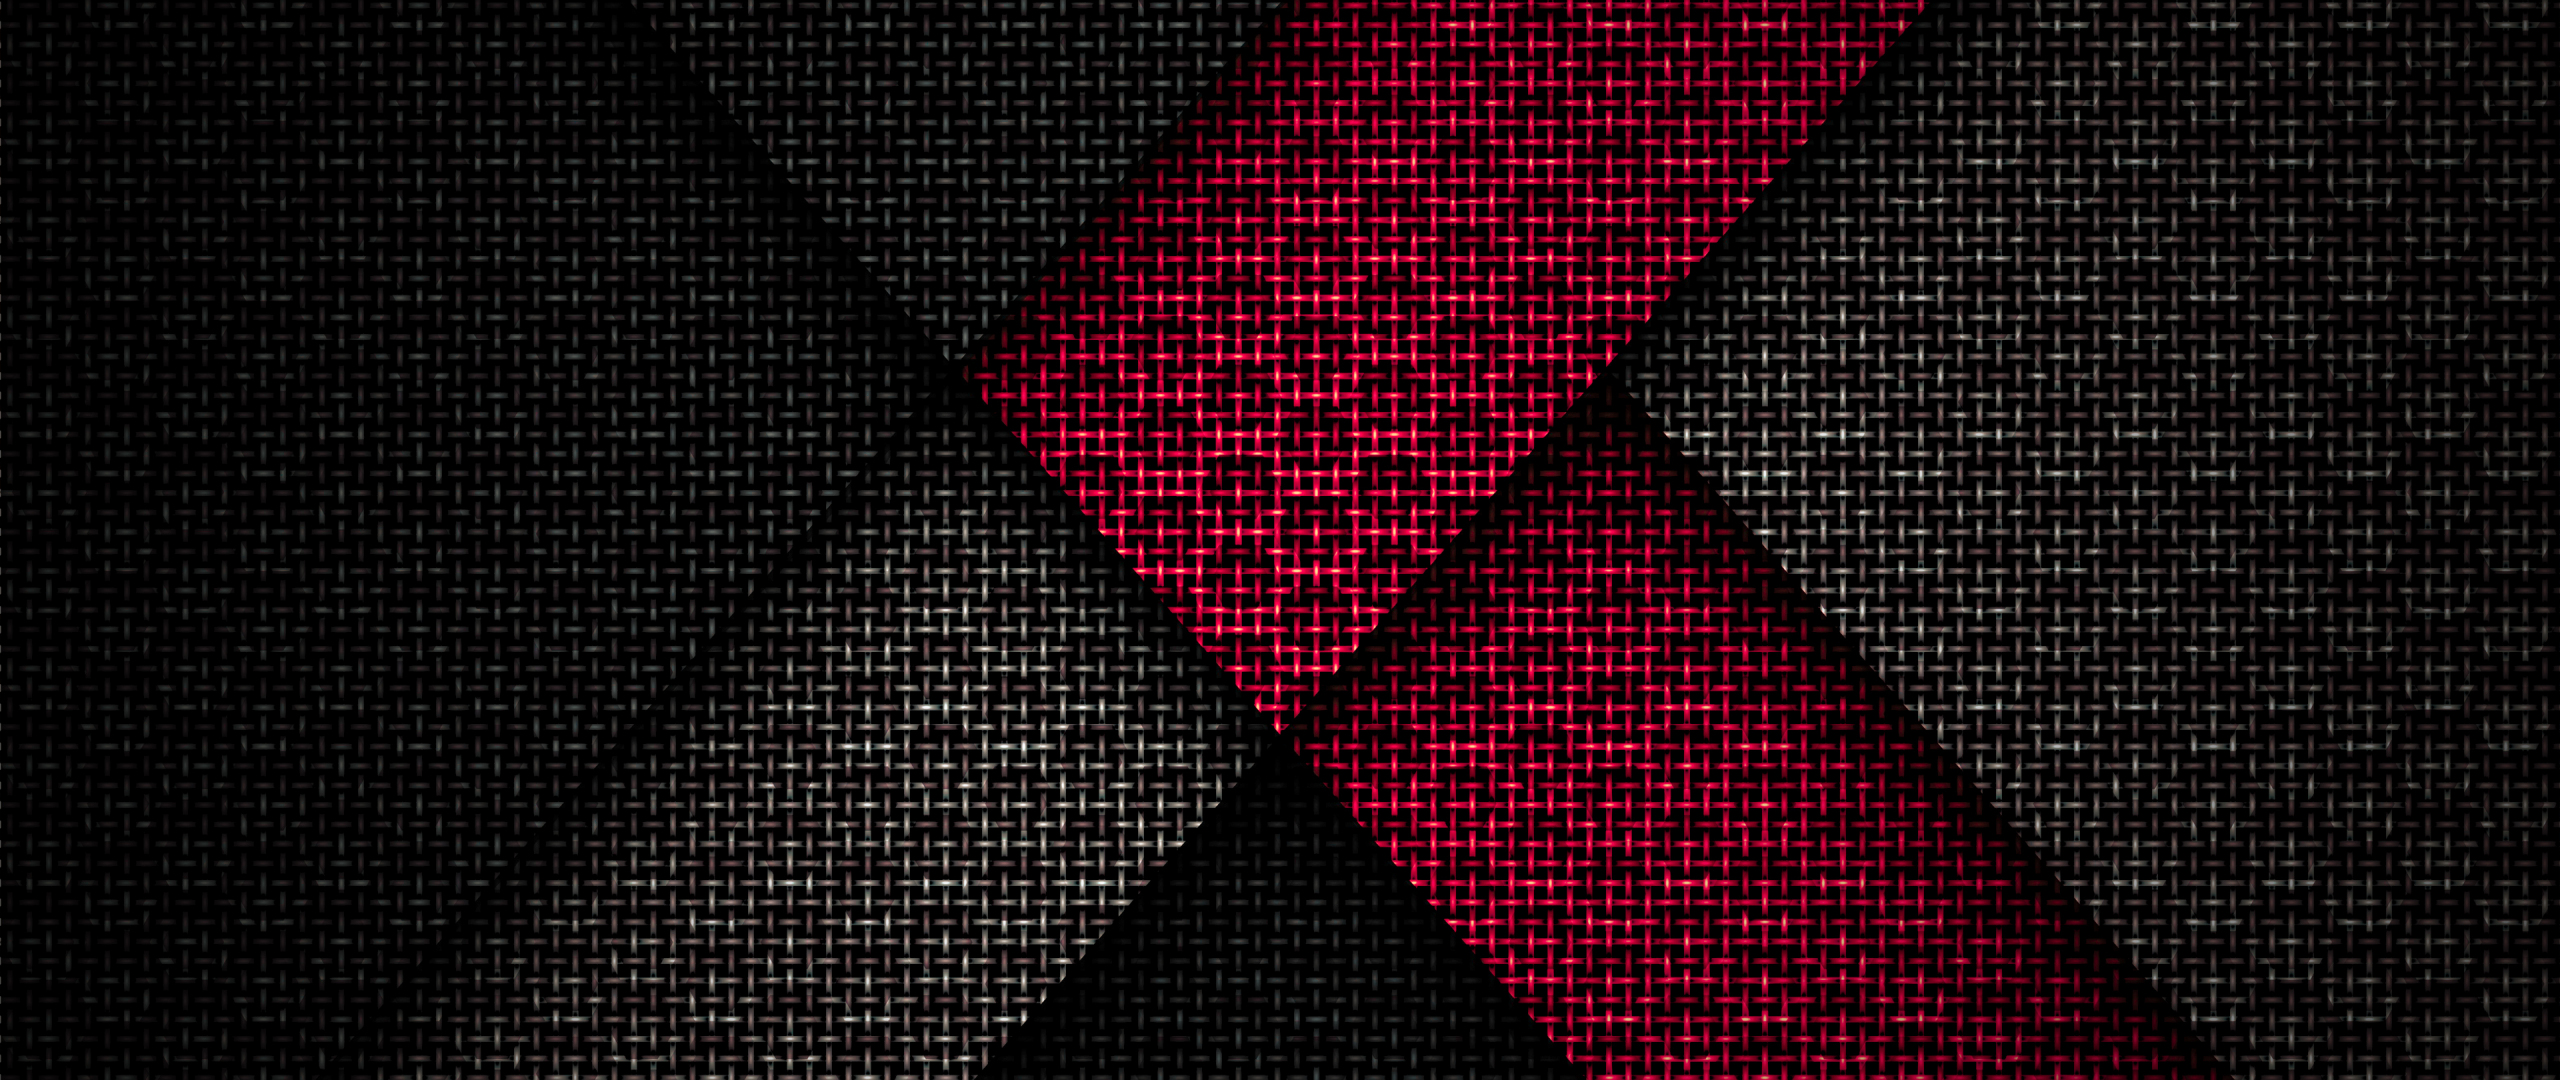 Sự kết hợp của đỏ và đen tạo nên một chiếc hình nền đẹp mắt, trang nhã và cá tính. Với một ý tưởng thiết kế độc đáo, nó sẽ đem lại cho bạn cảm giác mới lạ và tươi mới mỗi khi thấy được nó trên màn hình. Hãy xem ngay hình ảnh để cảm nhận sự thú vị này nhé!